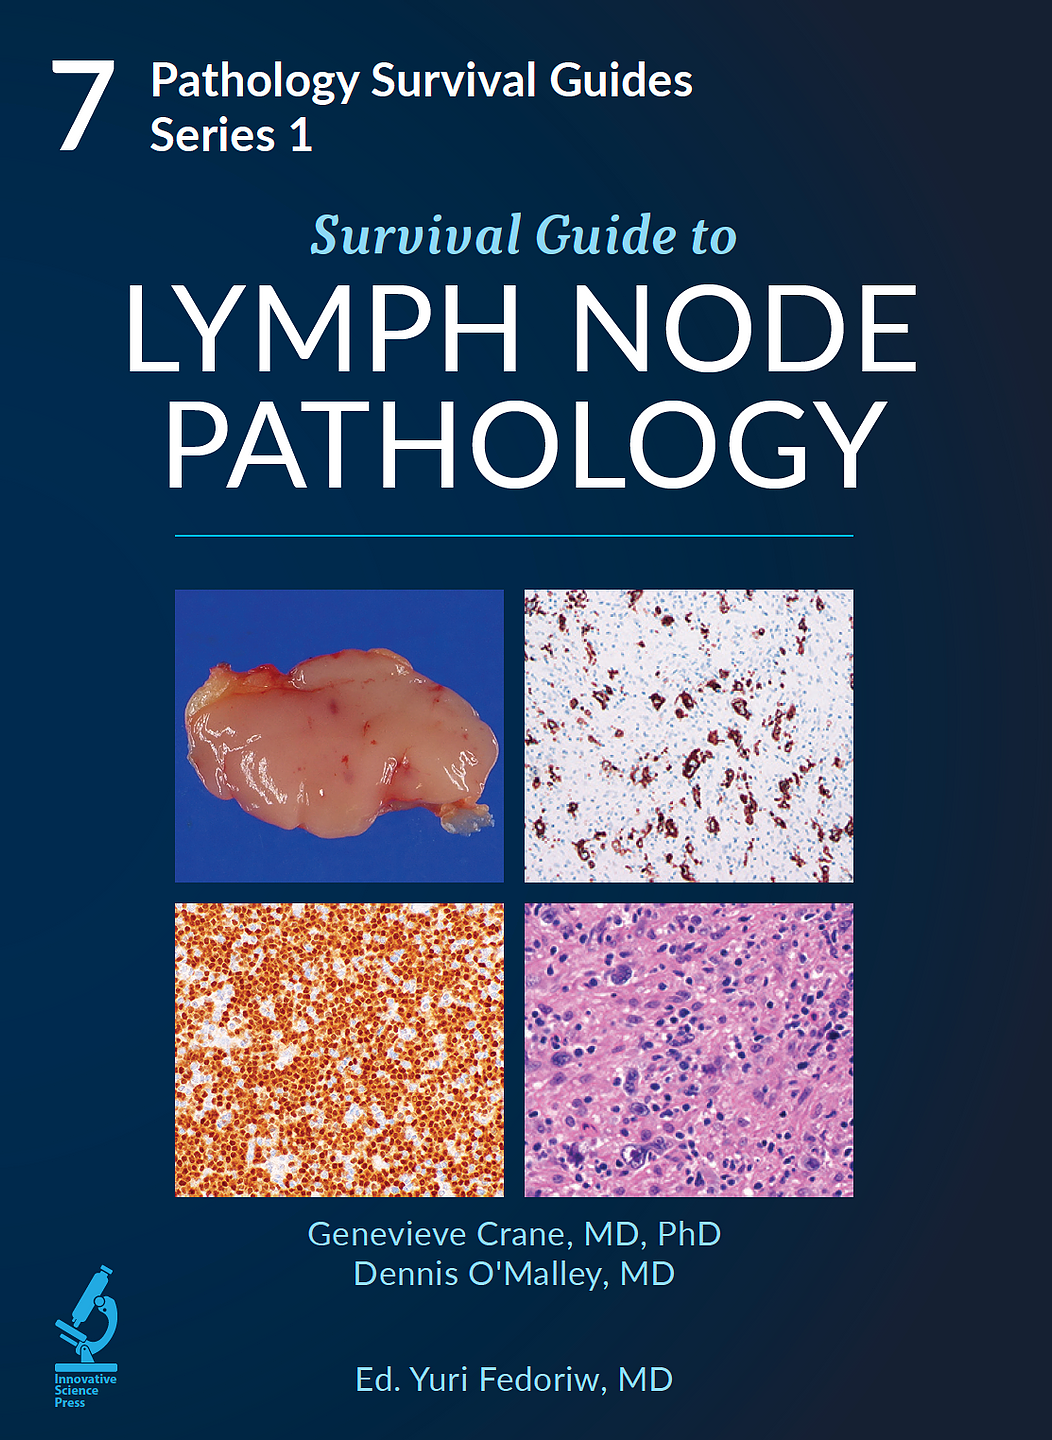 Pathology Survival Guides, Series 1Vol.7: Survival Guide to Lymph Node Pathology